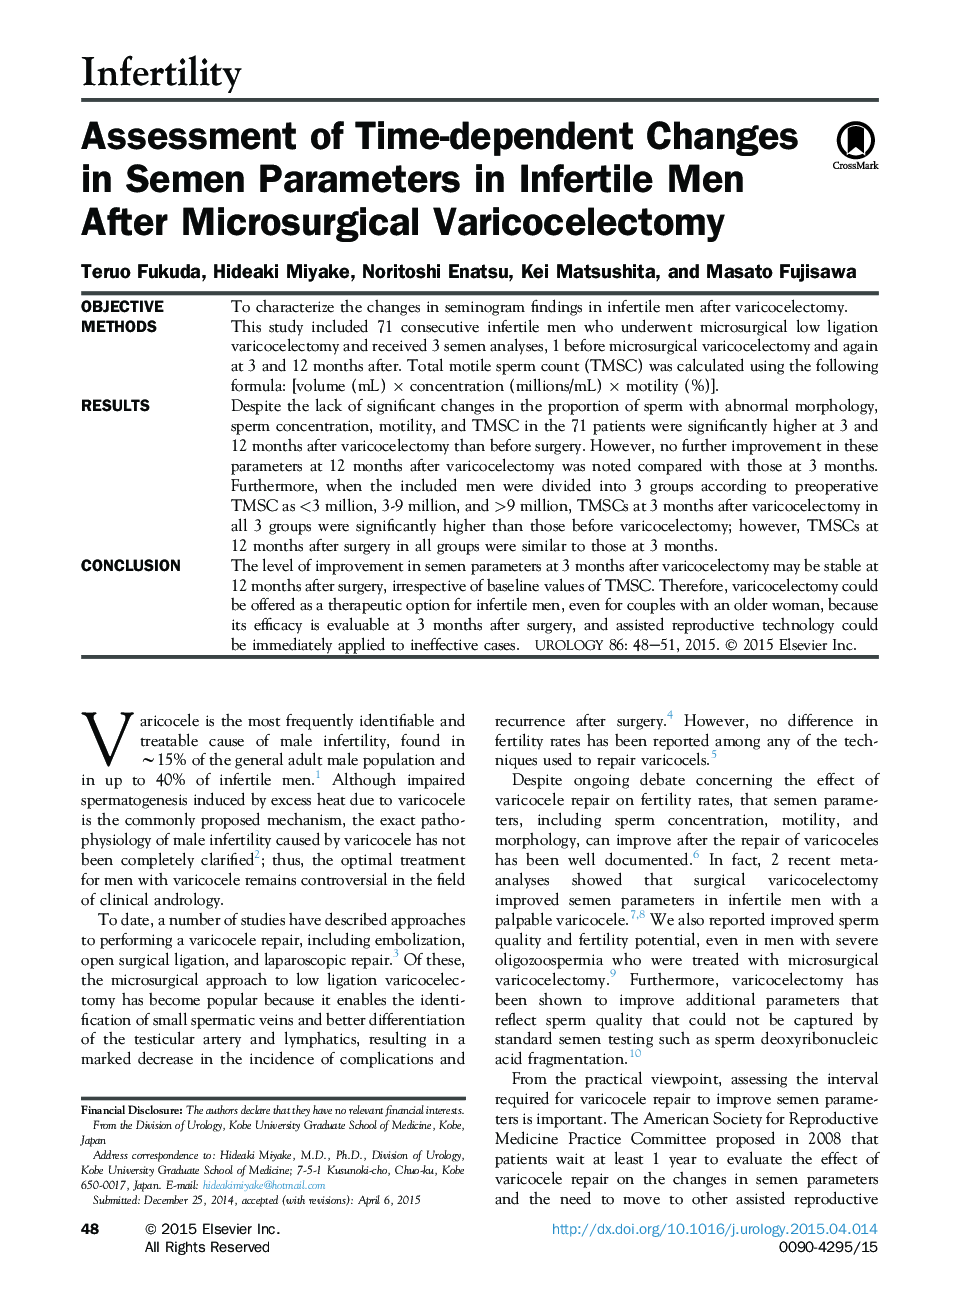 بررسی تغییرات وابسته به زمان در پارامترهای اسپرم در مردان نابارور پس از واریکوسلکتومی میکروسکوپیک 